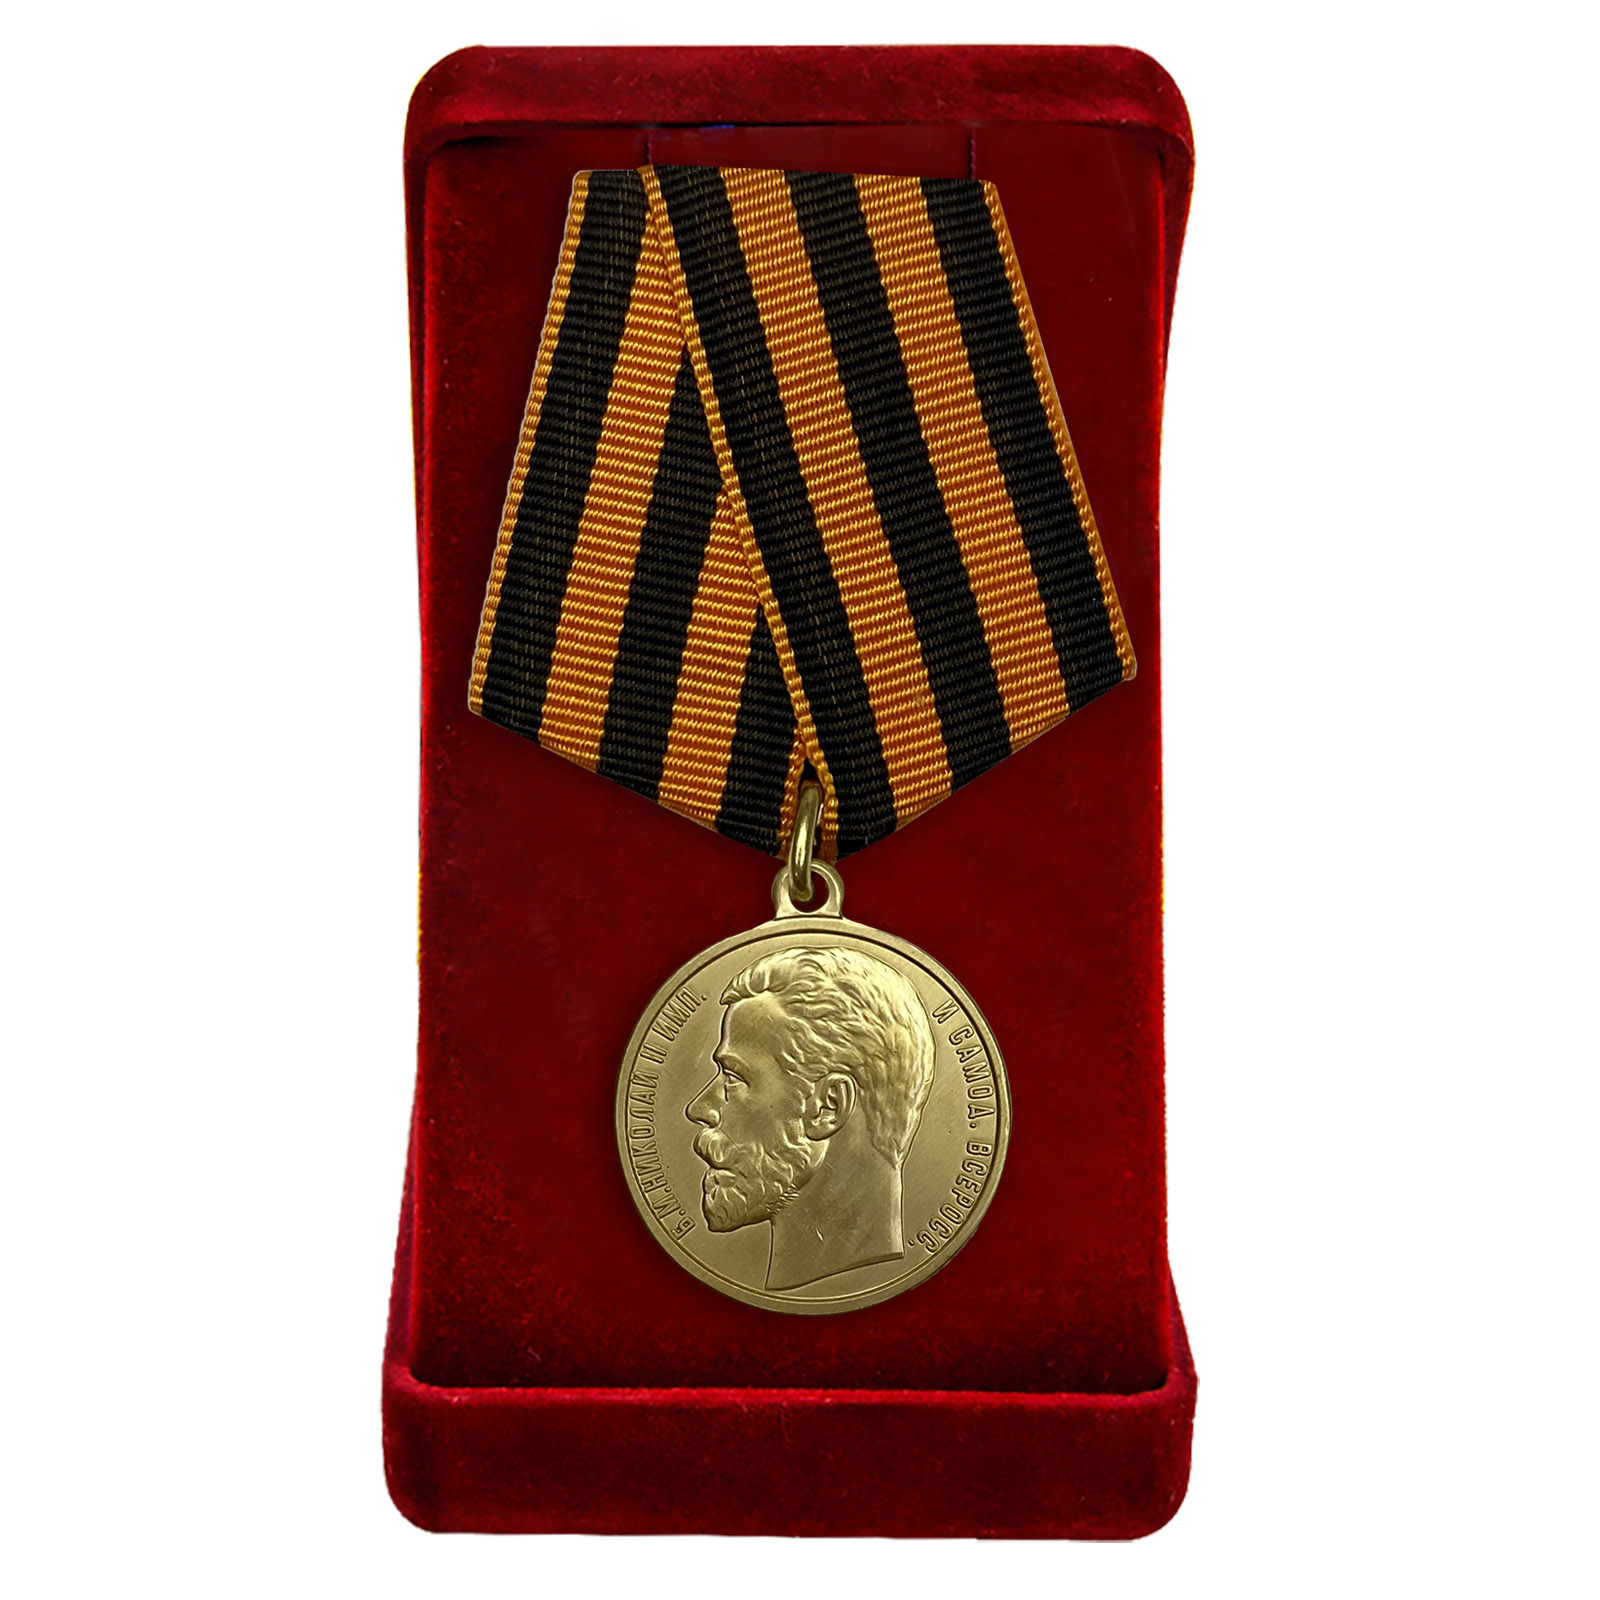 Купить медаль За храбрость 2 степени (Николай 2) онлайн в подарок